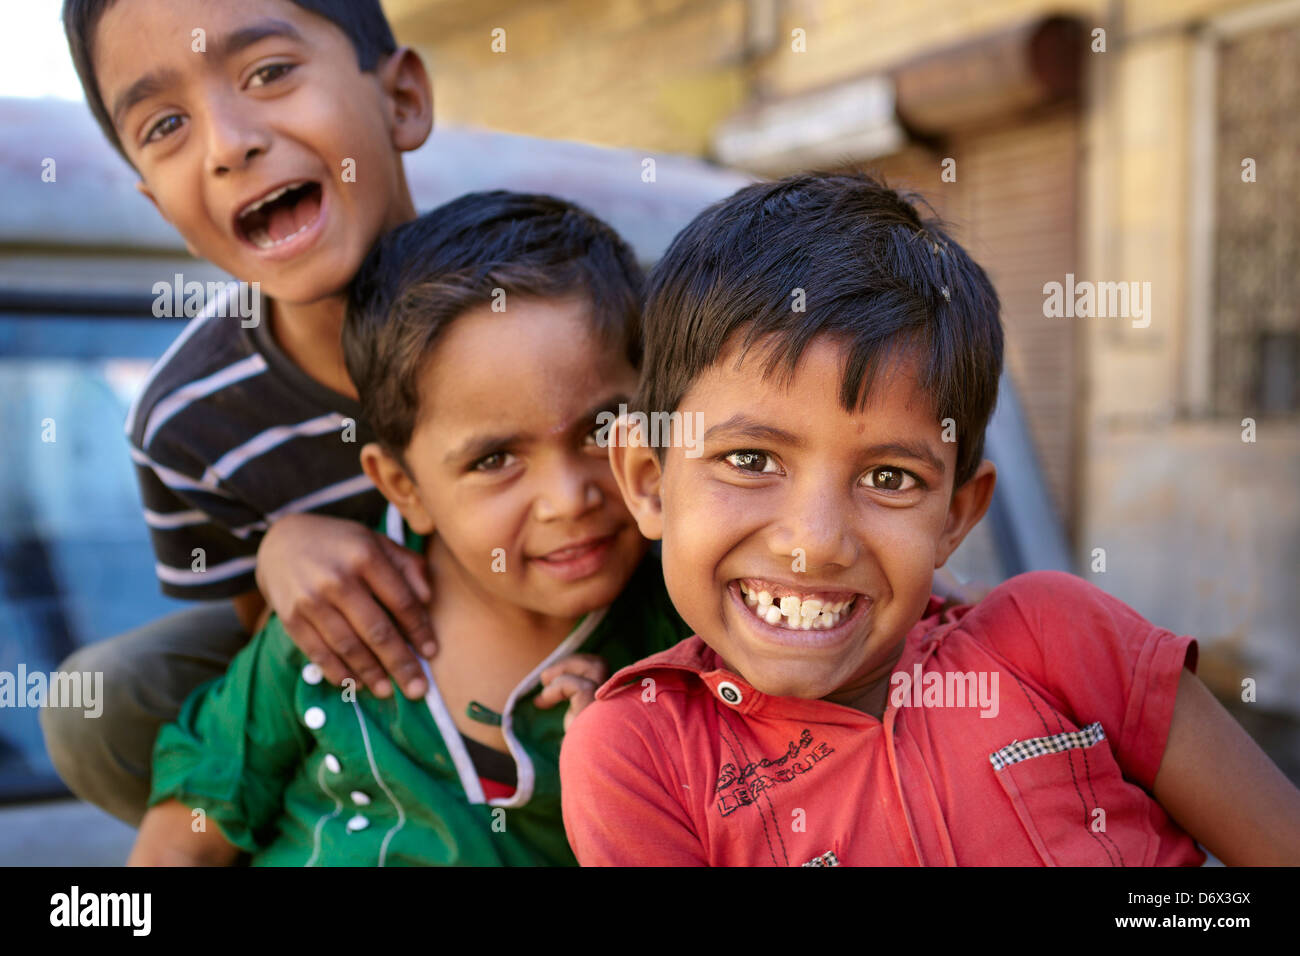 Portrait of playing smiling india boys, Jaisalmer, India Stock Photo